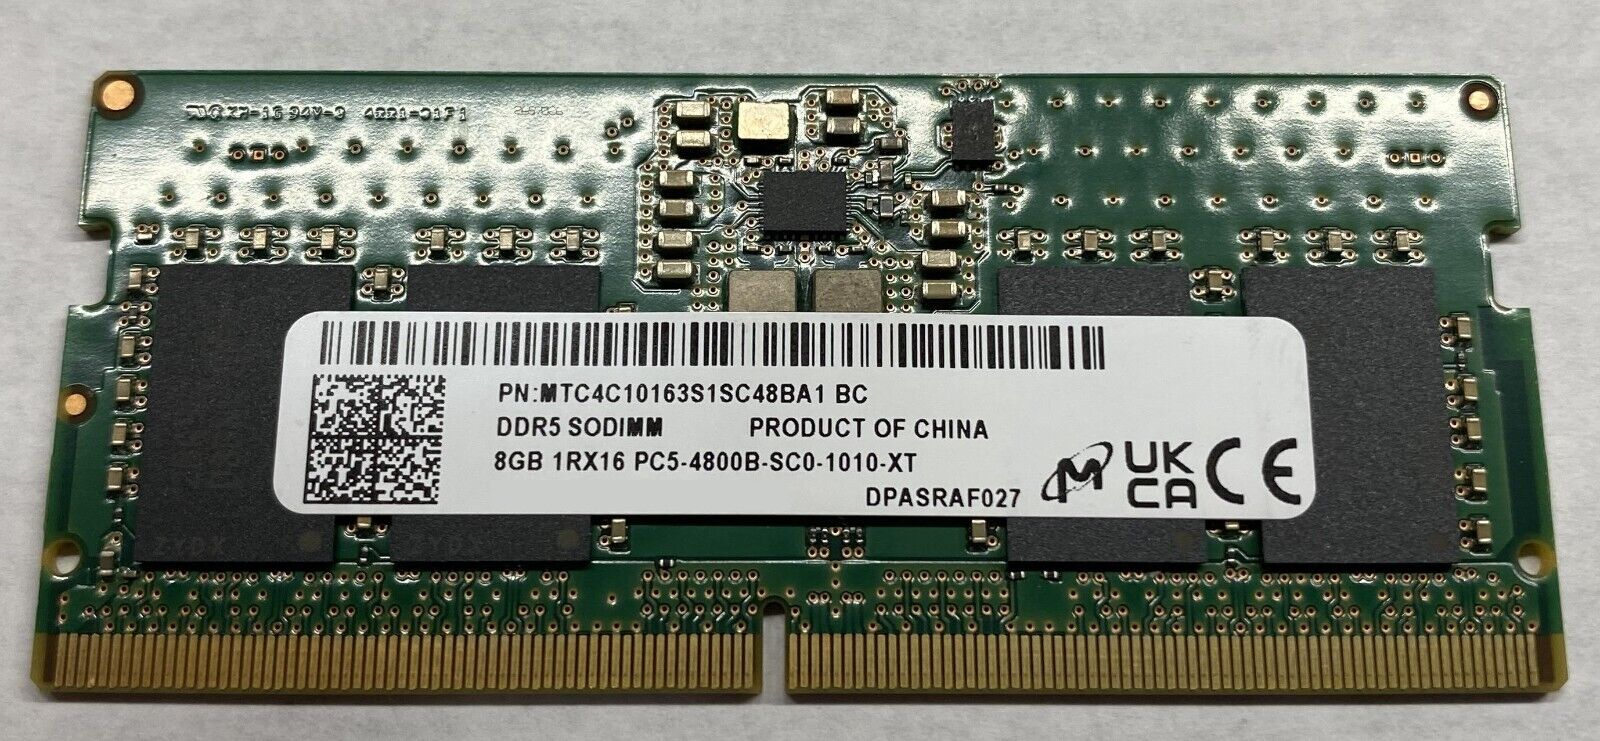 OEM Micron 8GB, PC5-4800B DDR5 Sodimm, ,  (MTC4C10163S1SC48BA1-BC) (Qty 10)